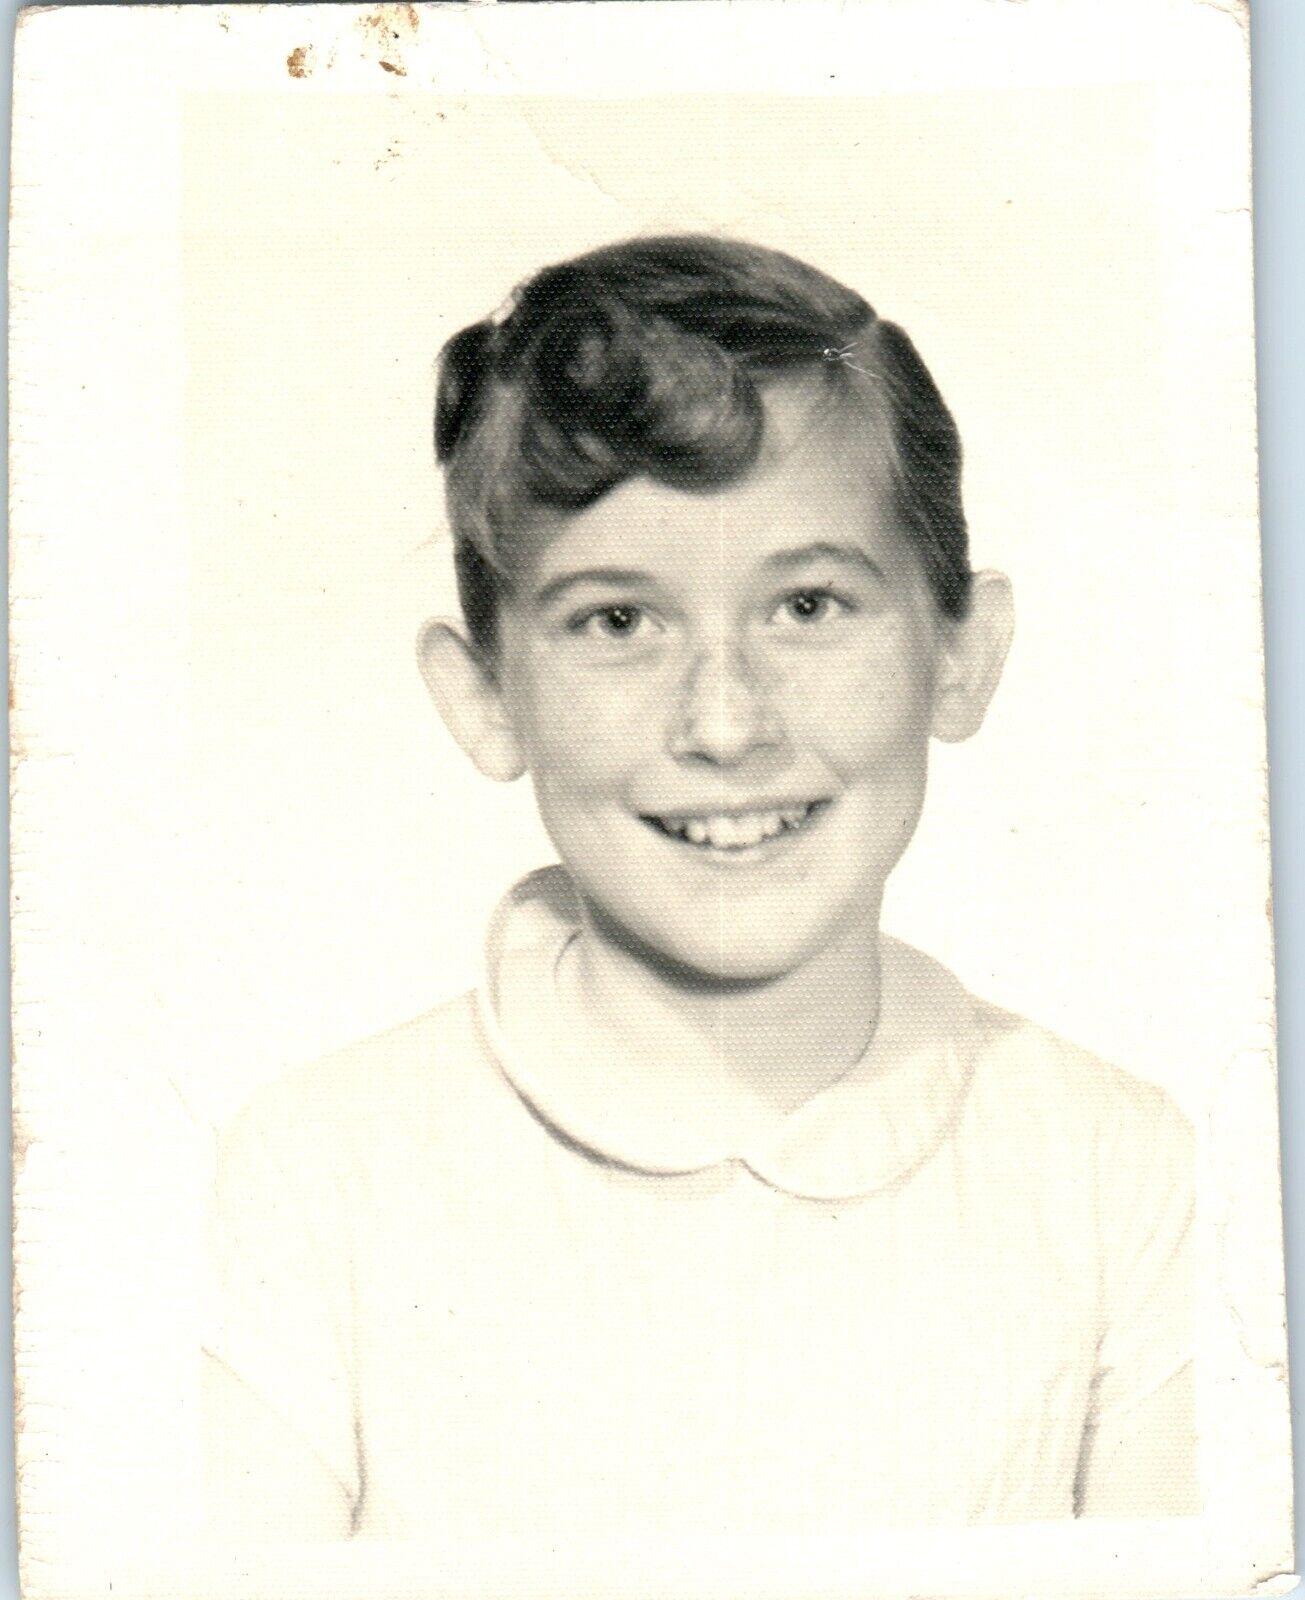 1959 Cape Cod Young Boy Freckles Portrait School Unique Vintage Photo